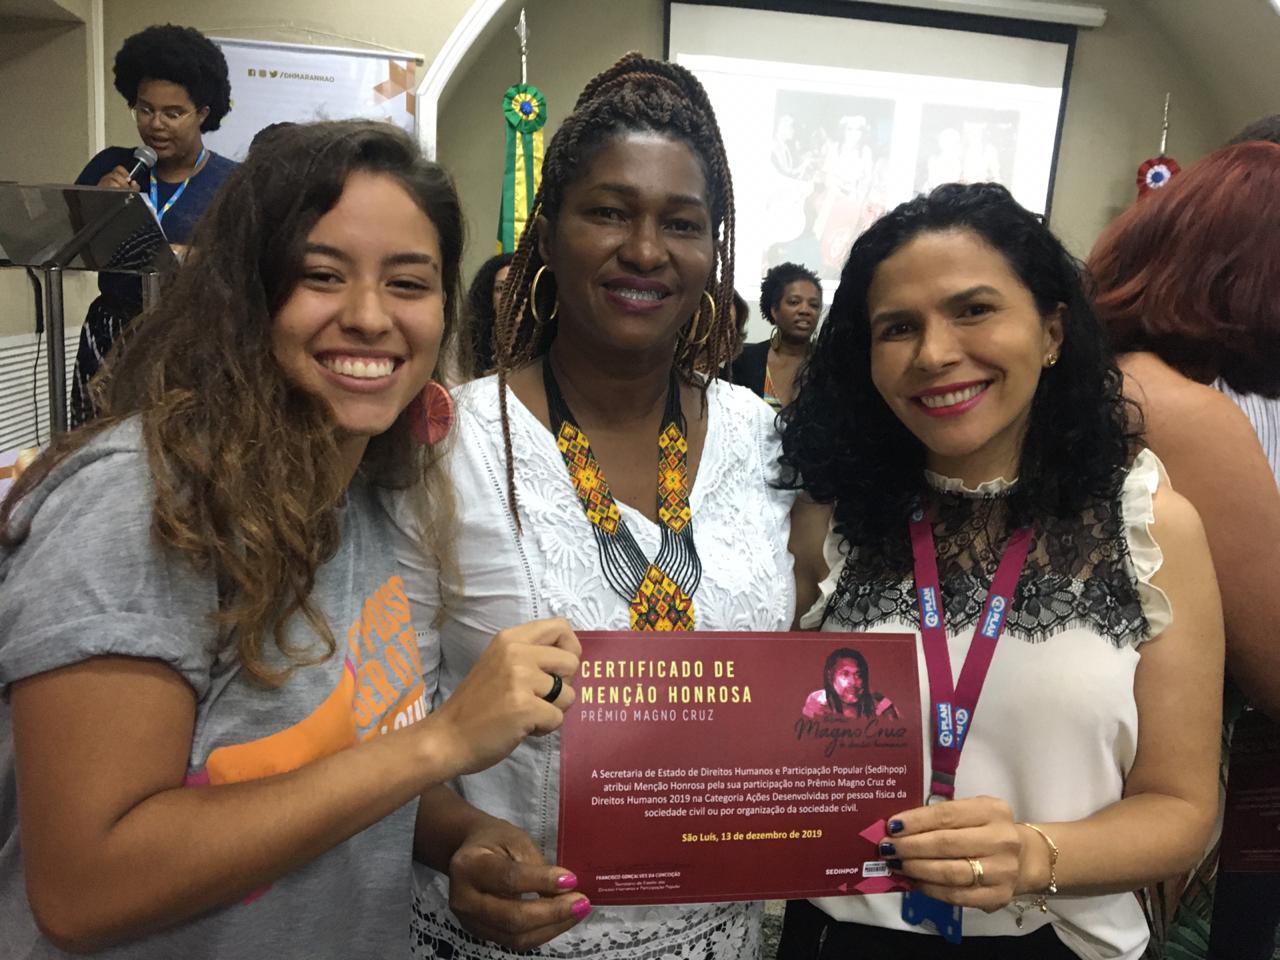 Uma jovem e duas mulheres posam segurando um certificado de menção honrosa do Prêmio Magno Luz concedido à Plan International Brasil. O clima é de alegria.